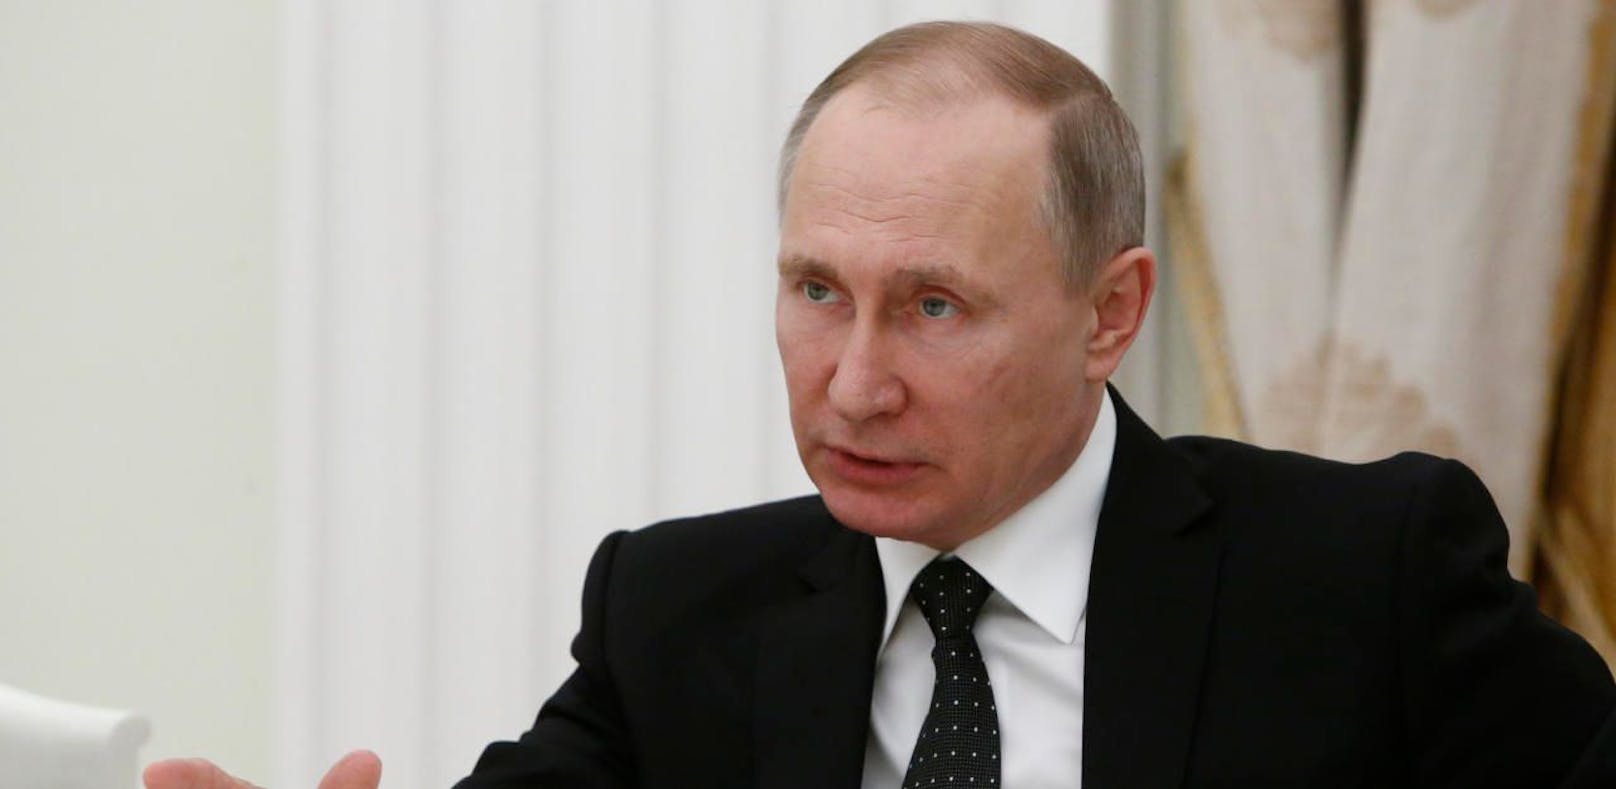 Wladimir Putin stellt sich gegen eine Verlängerung der Ermittlungen in Syrien.